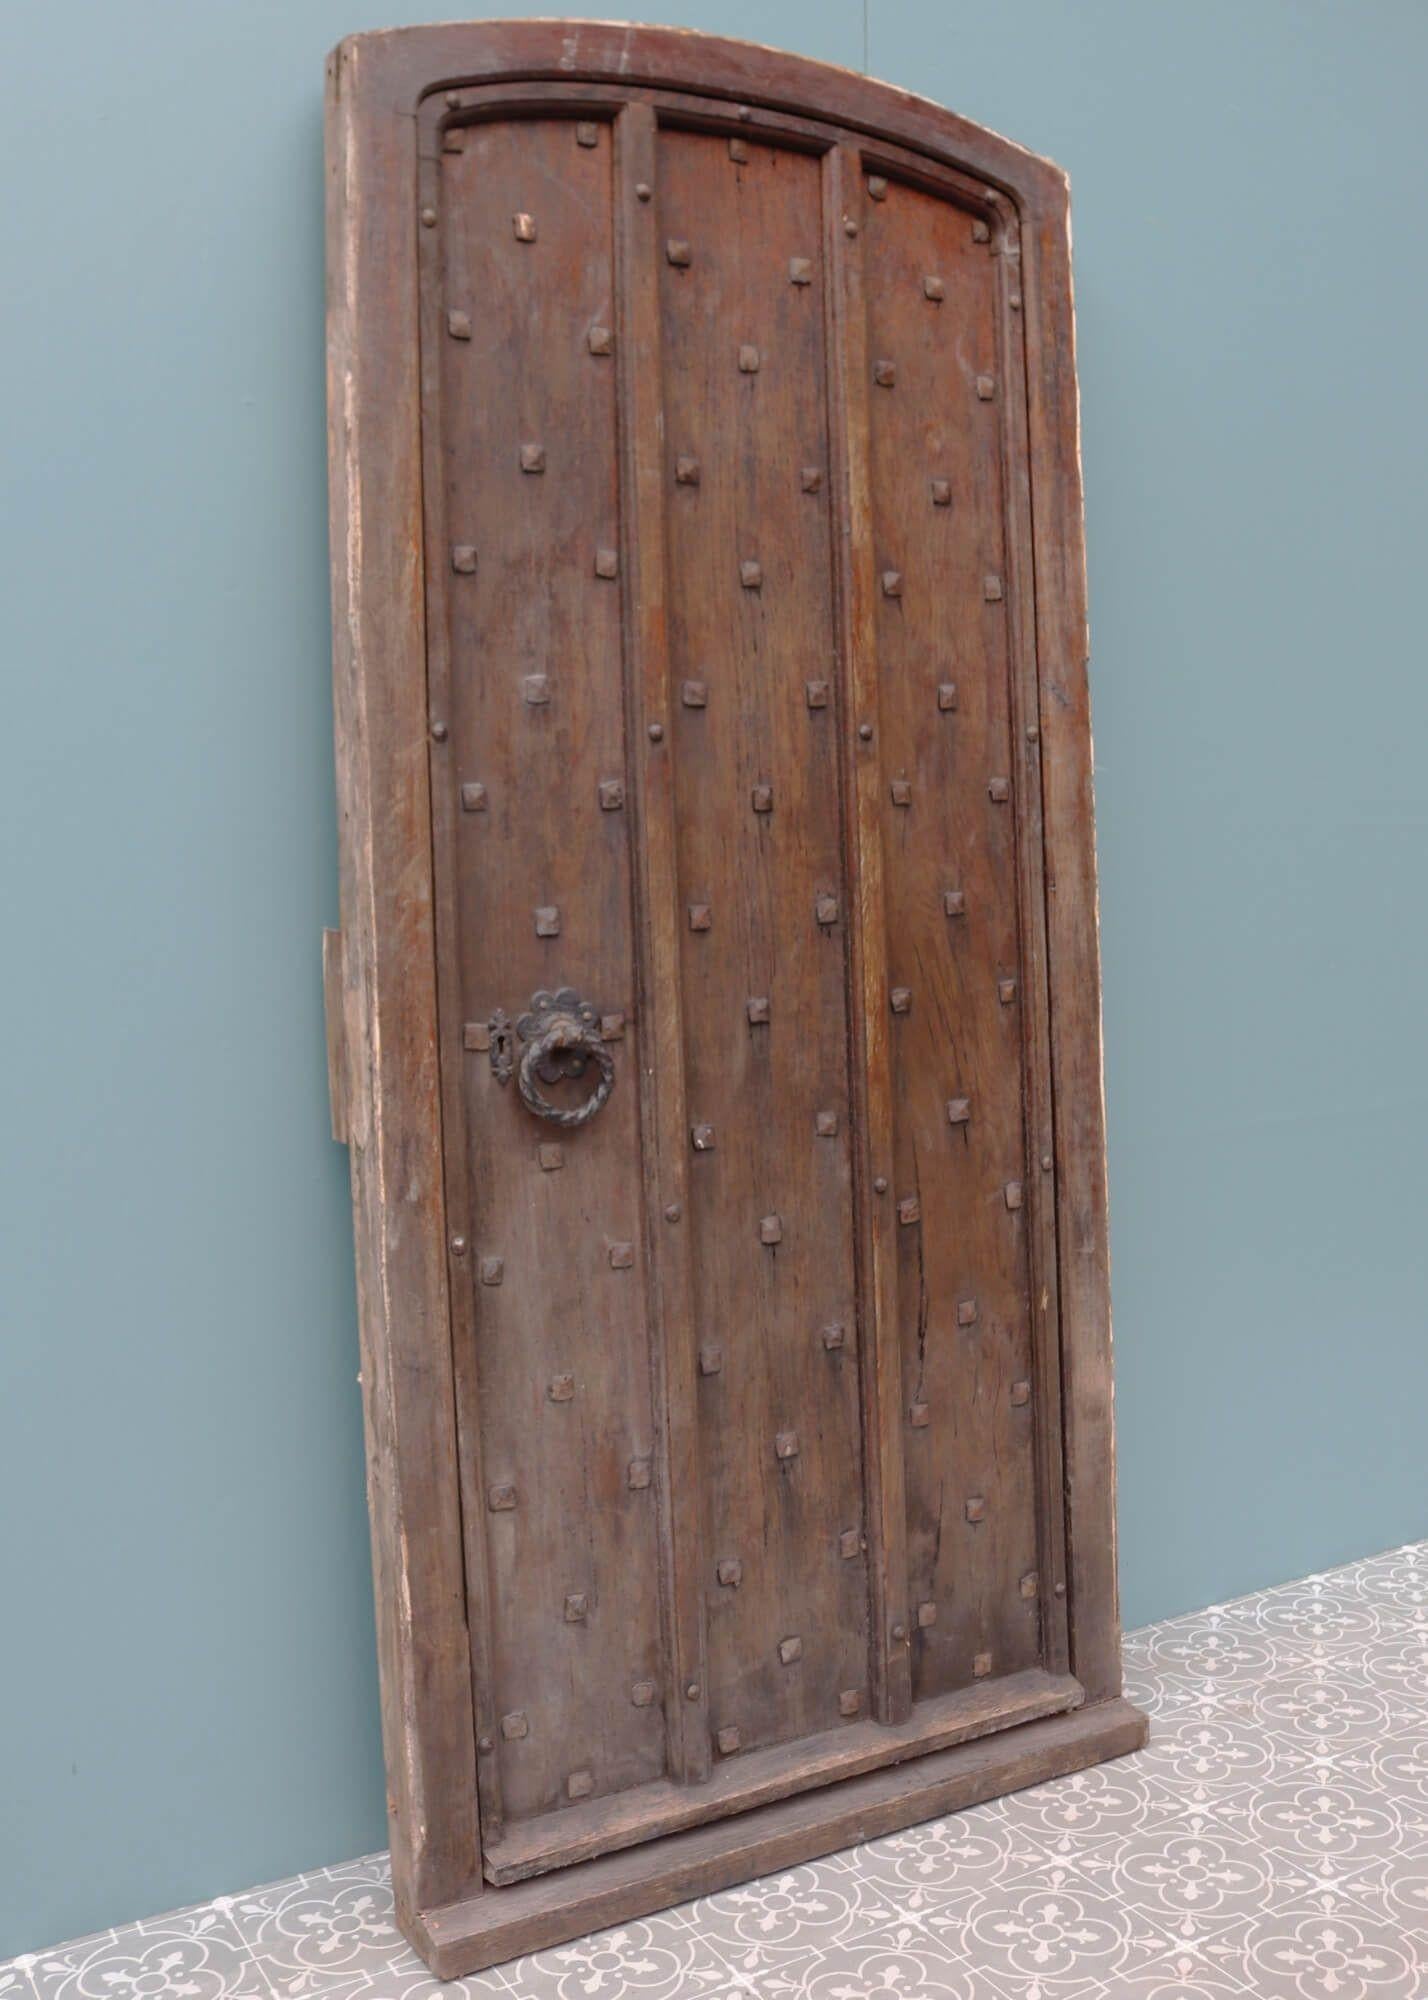 Cette épaisse porte en chêne clouté date du début des années 1900. Elle faisait peut-être partie de l'entrée d'un château ou d'une église. Quelle que soit son ancienne utilisation, cette porte ancienne avec cadre constitue aujourd'hui une porte